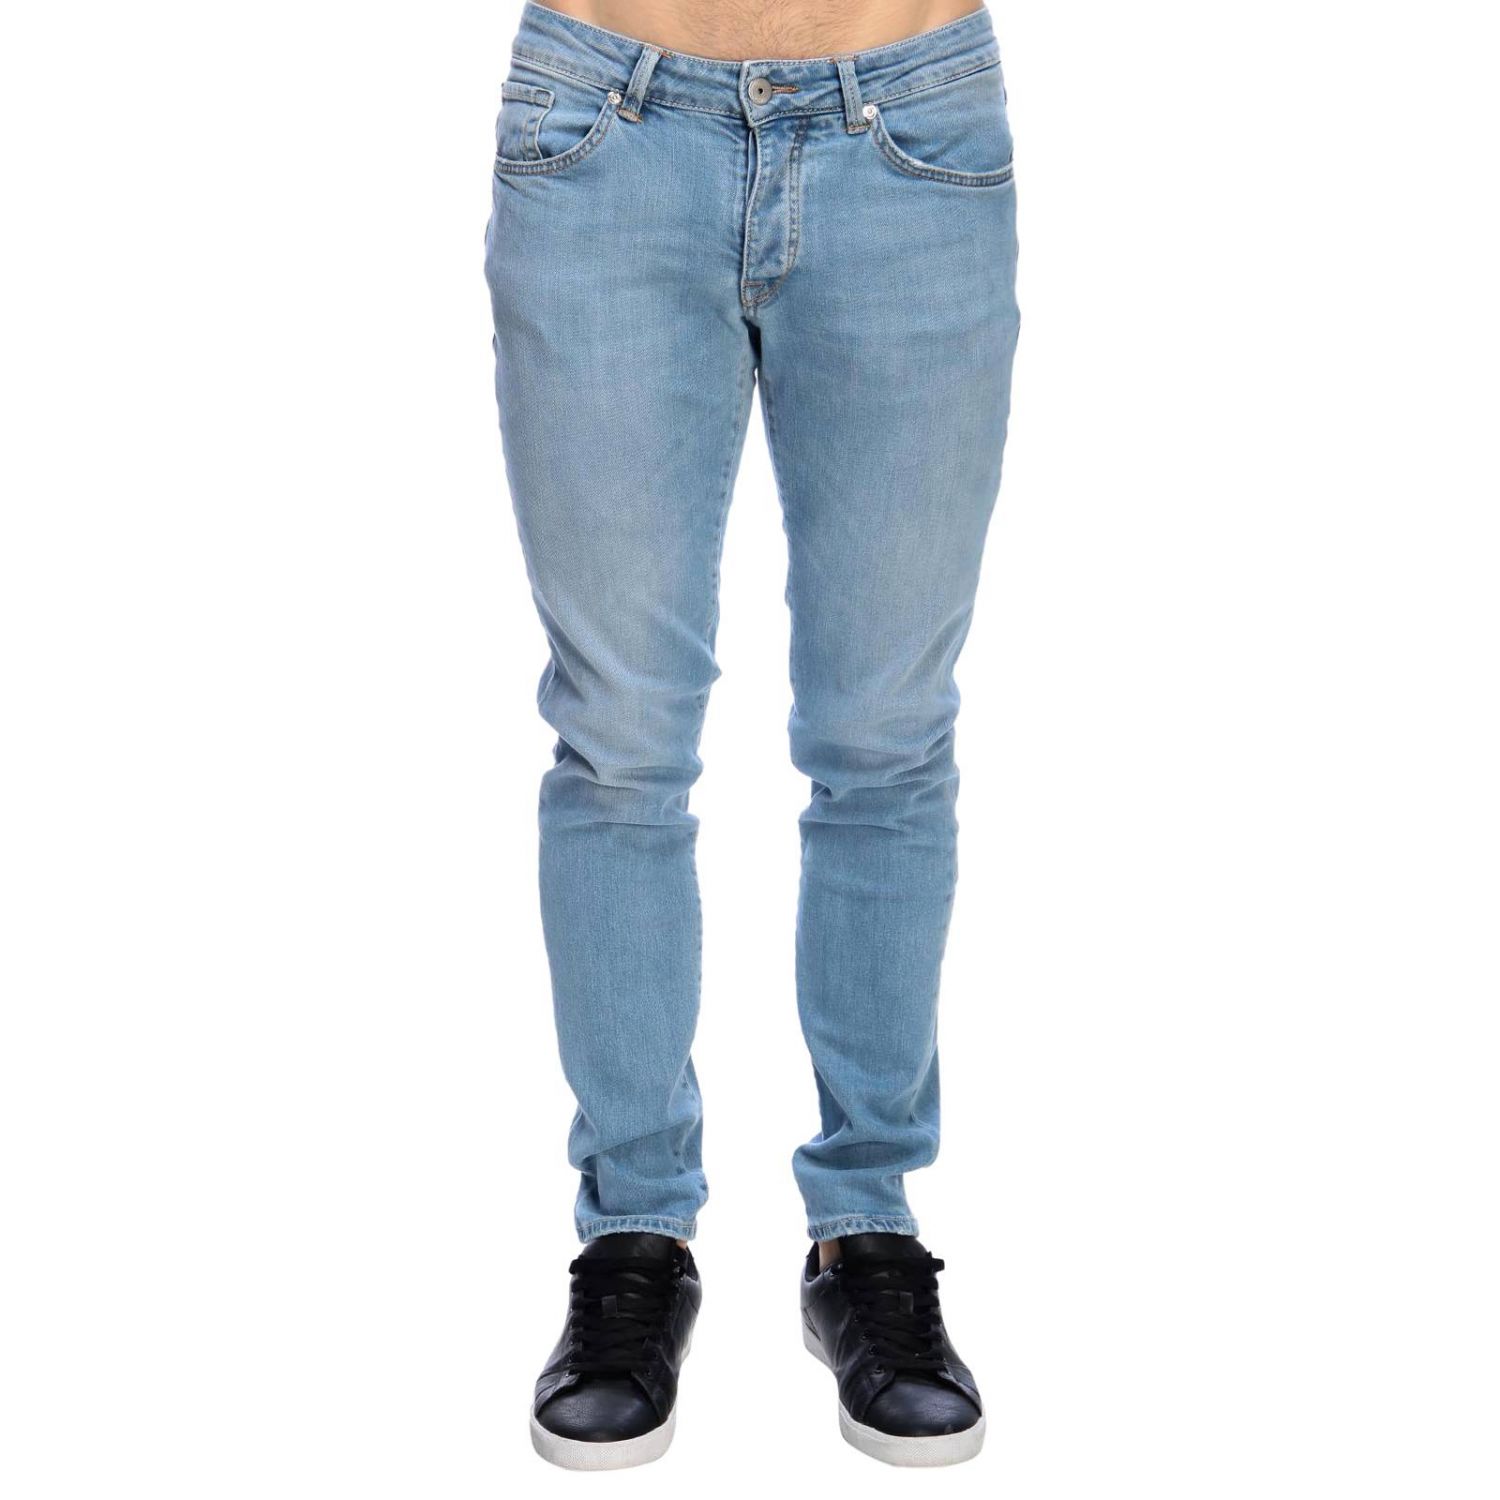 Michael Coal Outlet: Jeans men - Denim | Jeans Michael Coal DAVID 1073 ...